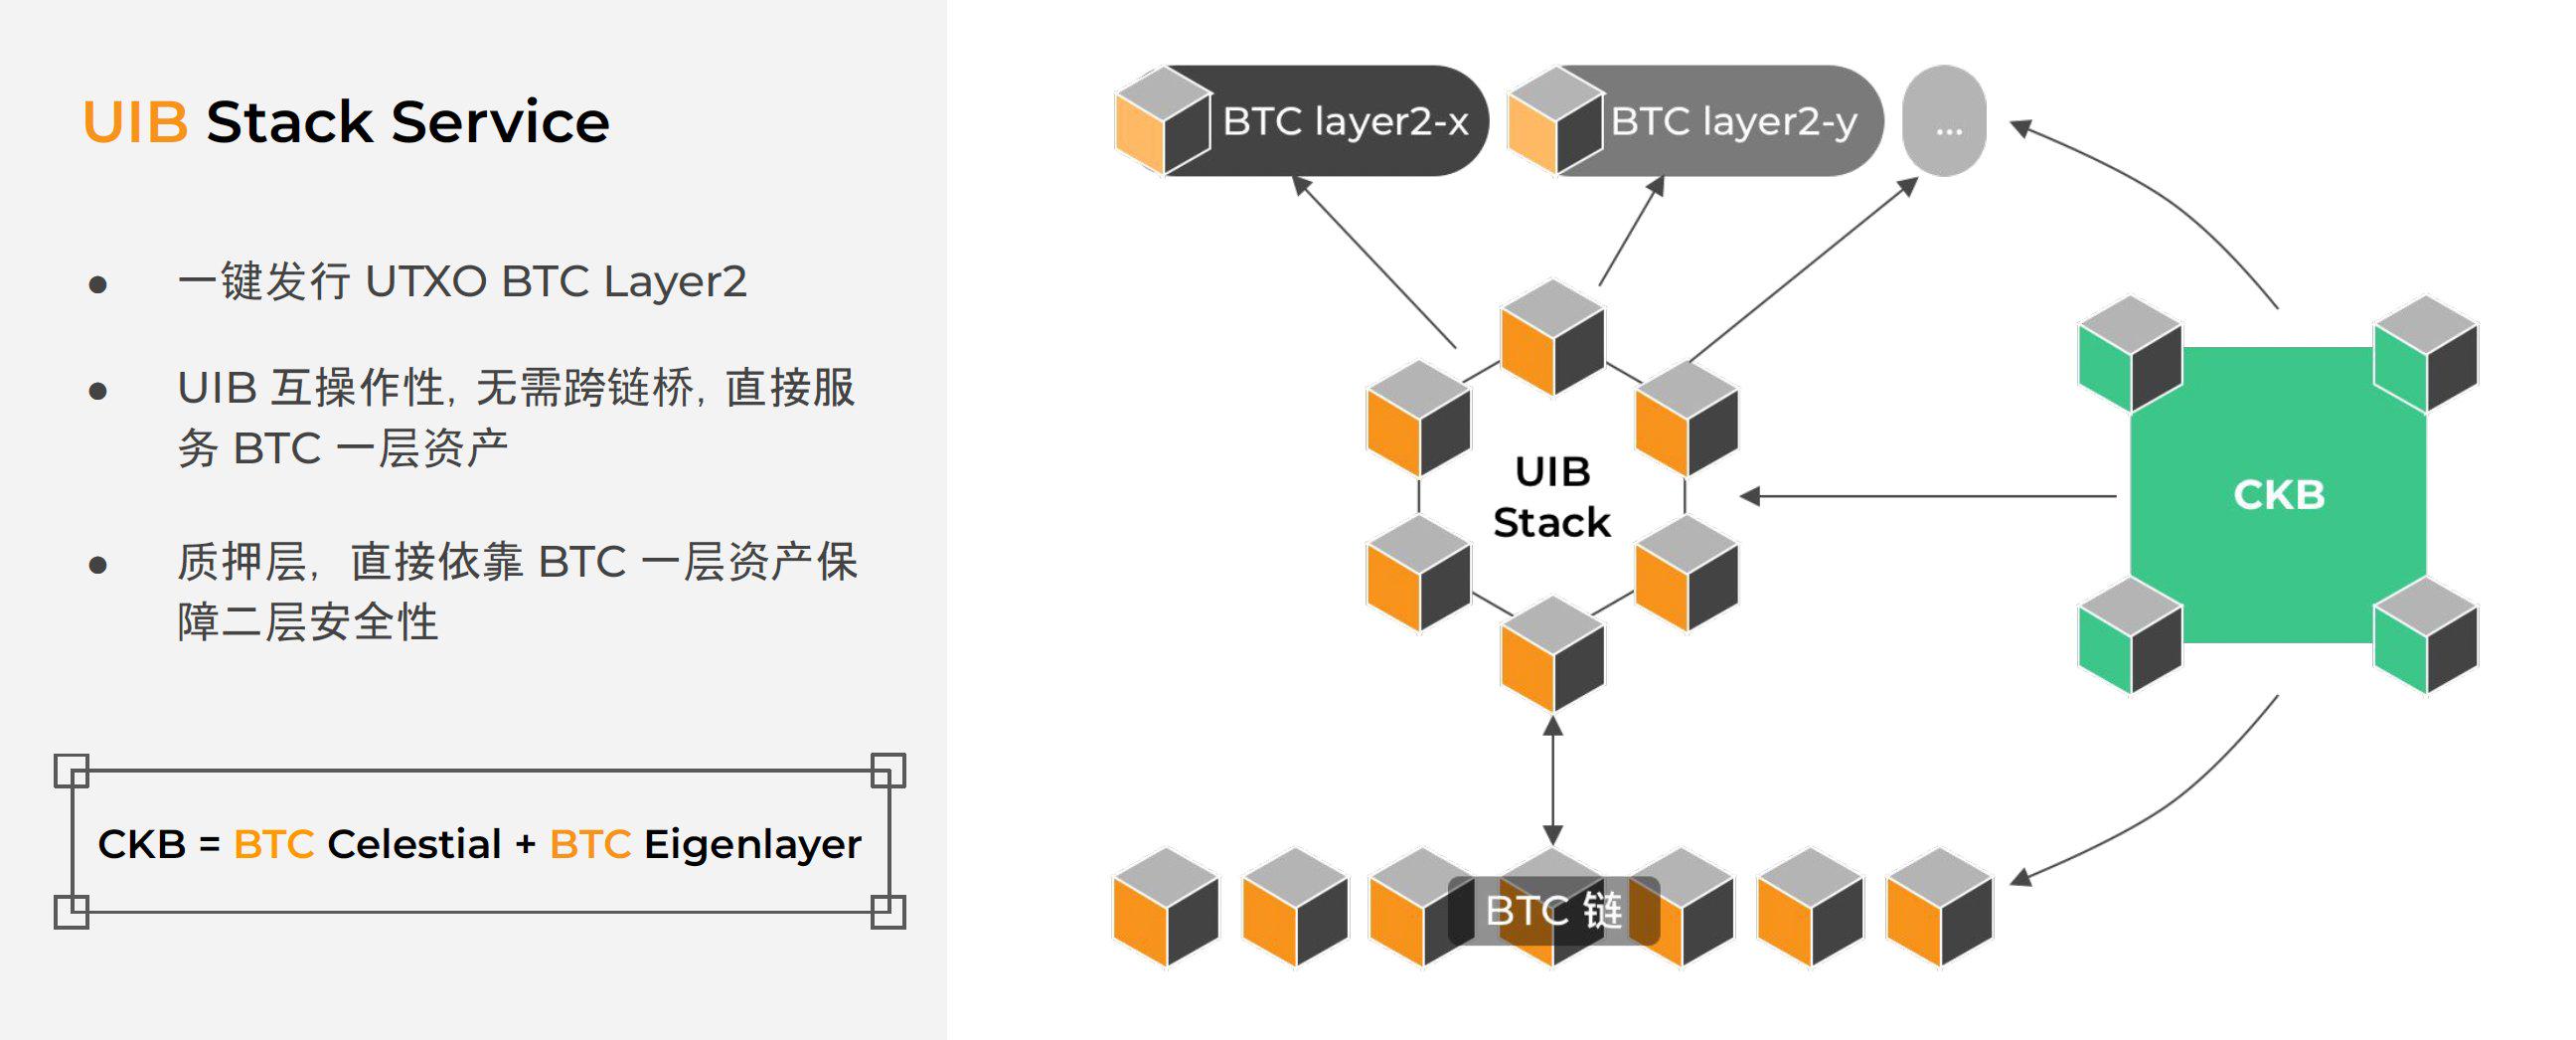 一文讀懂模組化BTC Layer2 一鍵發鏈平台UTXO Stack